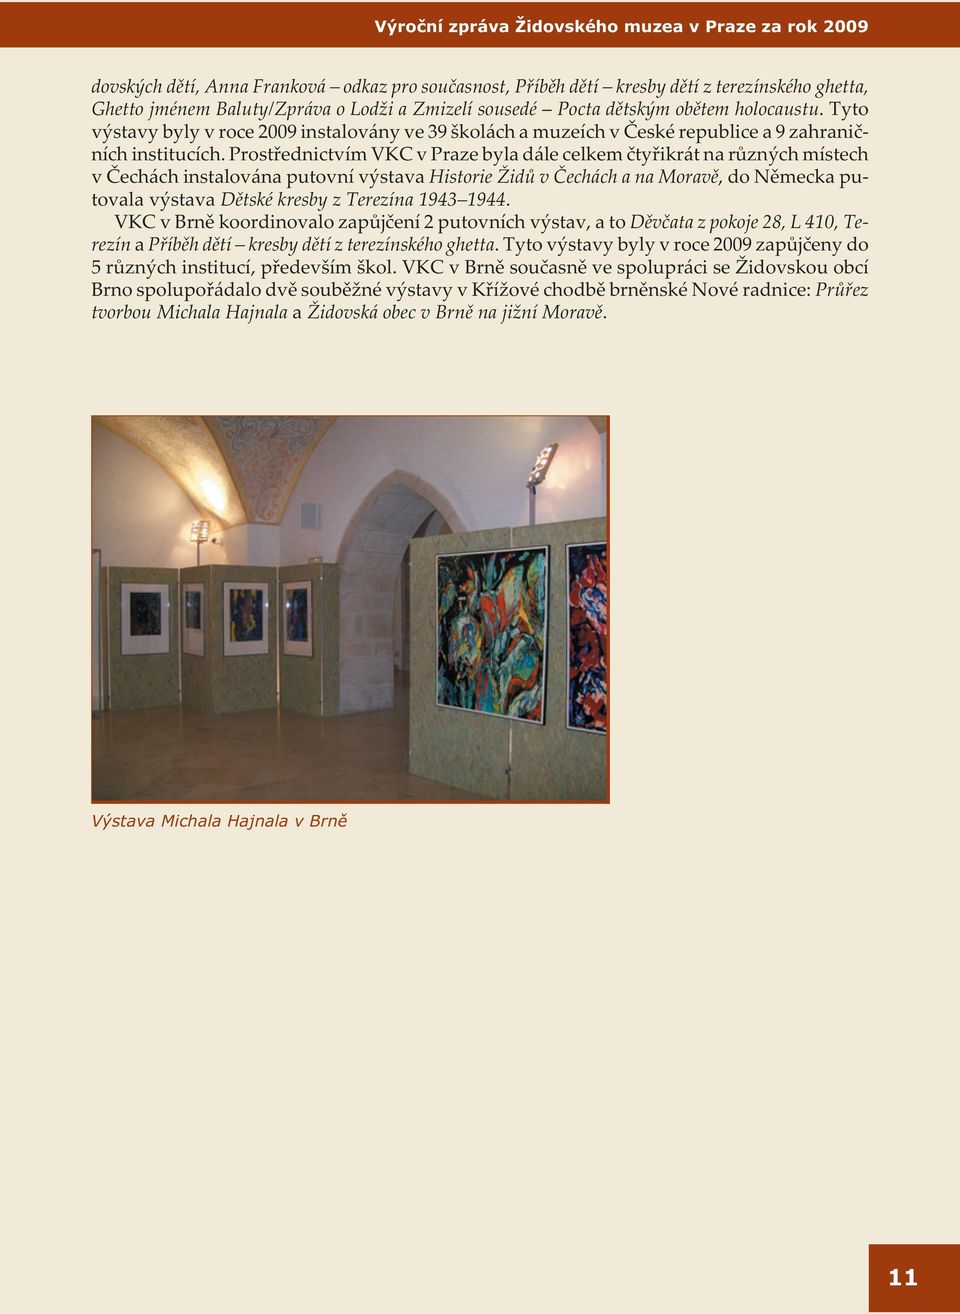 Prostøednictvím VKC v Praze byla dále celkem ètyøikrát na rùzných místech v Èechách instalována putovní výstava Historie Židù v Èechách a na Moravì, do Nìmecka putovala výstava Dìtské kresby z